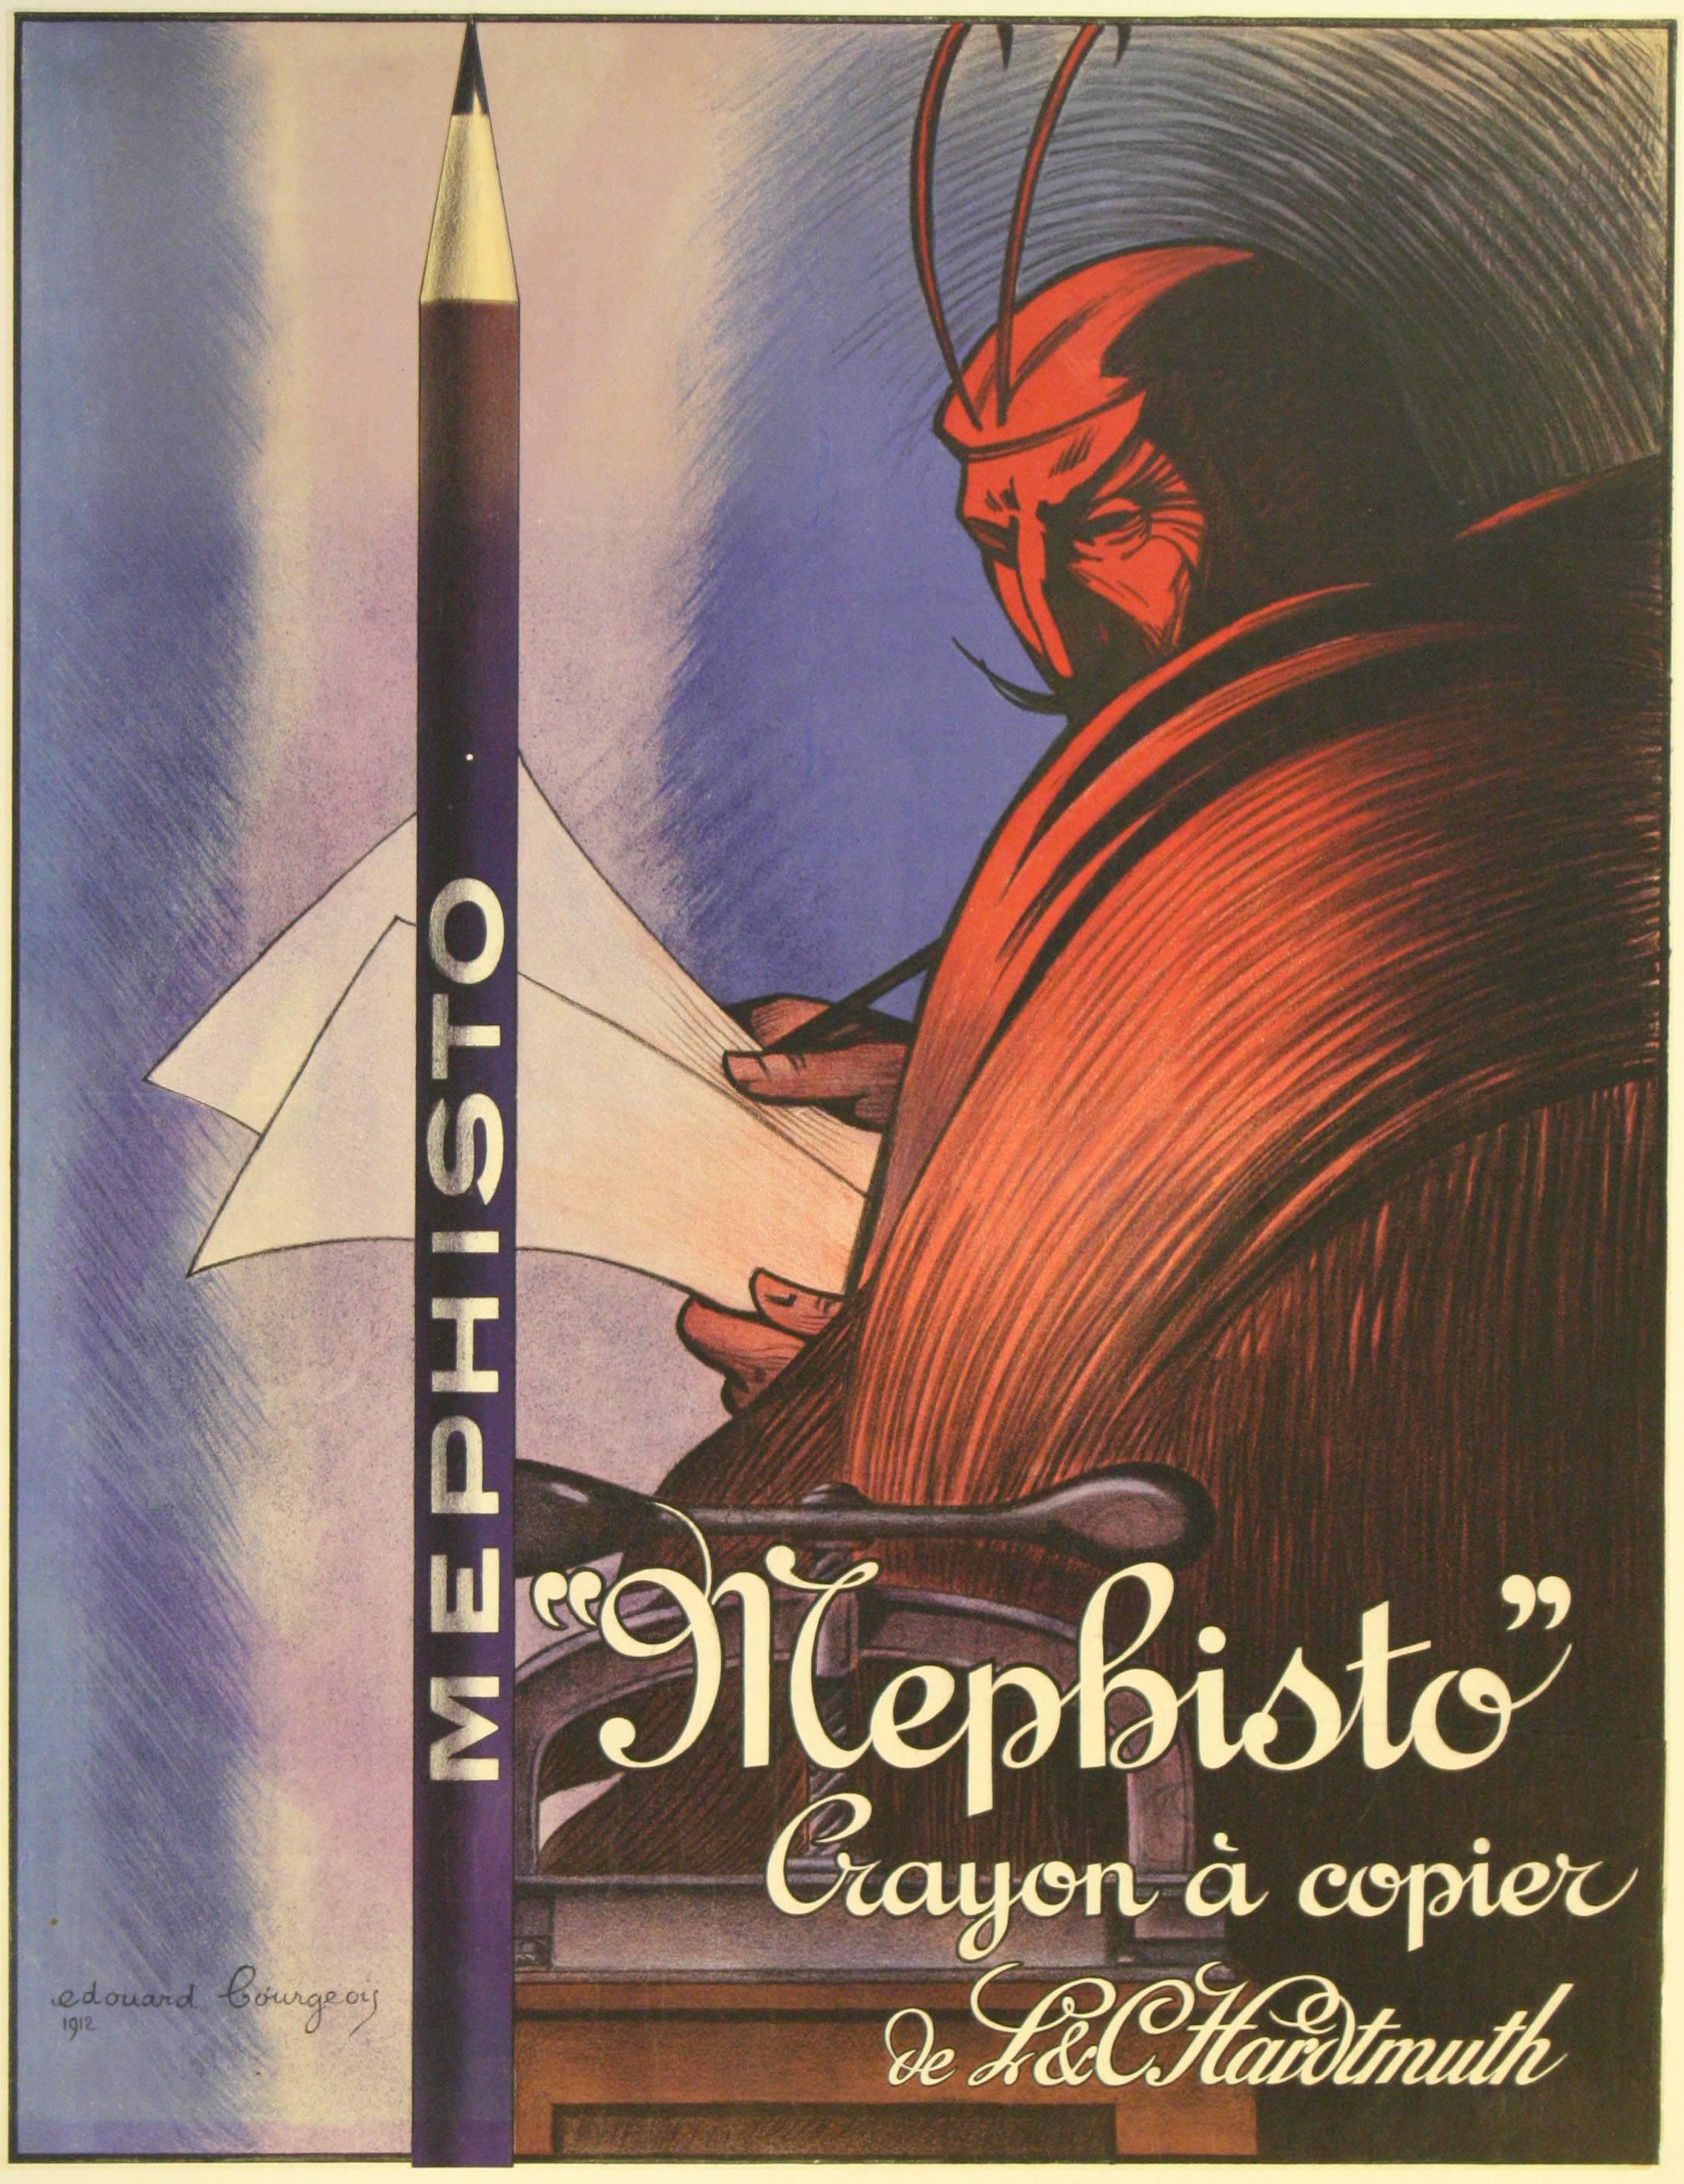 Print Édouard Bourgeois Debourg - Affiche publicitaire originale de 1912 pour les crayons Mephisto L&C Hardtmuth (Koh-i-noor)